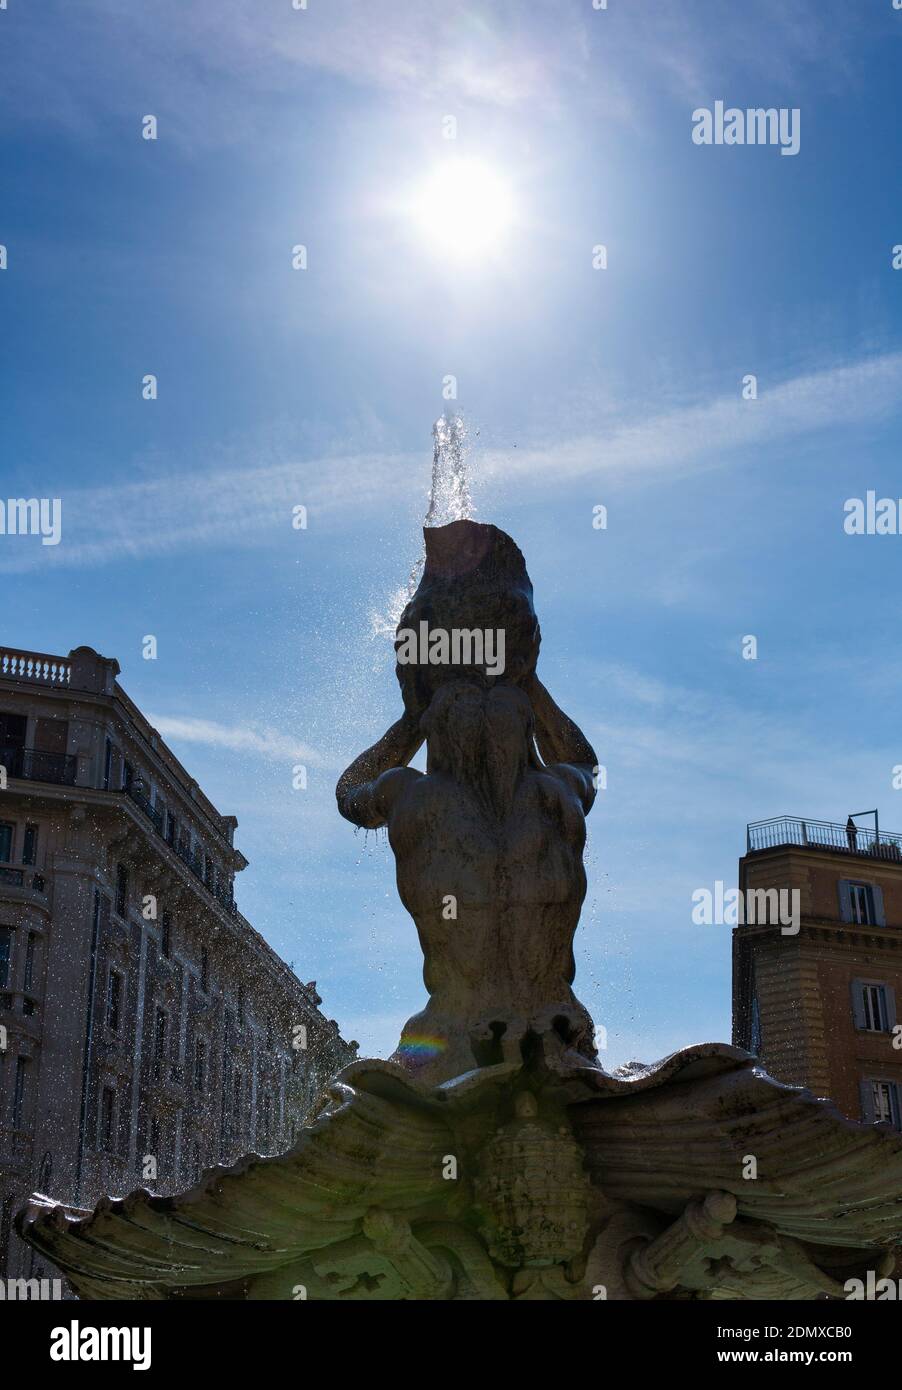 Fontana del Tritone, Bernini Sculpture, Piazza Barberini, Rome, Italy, Europe Stock Photo